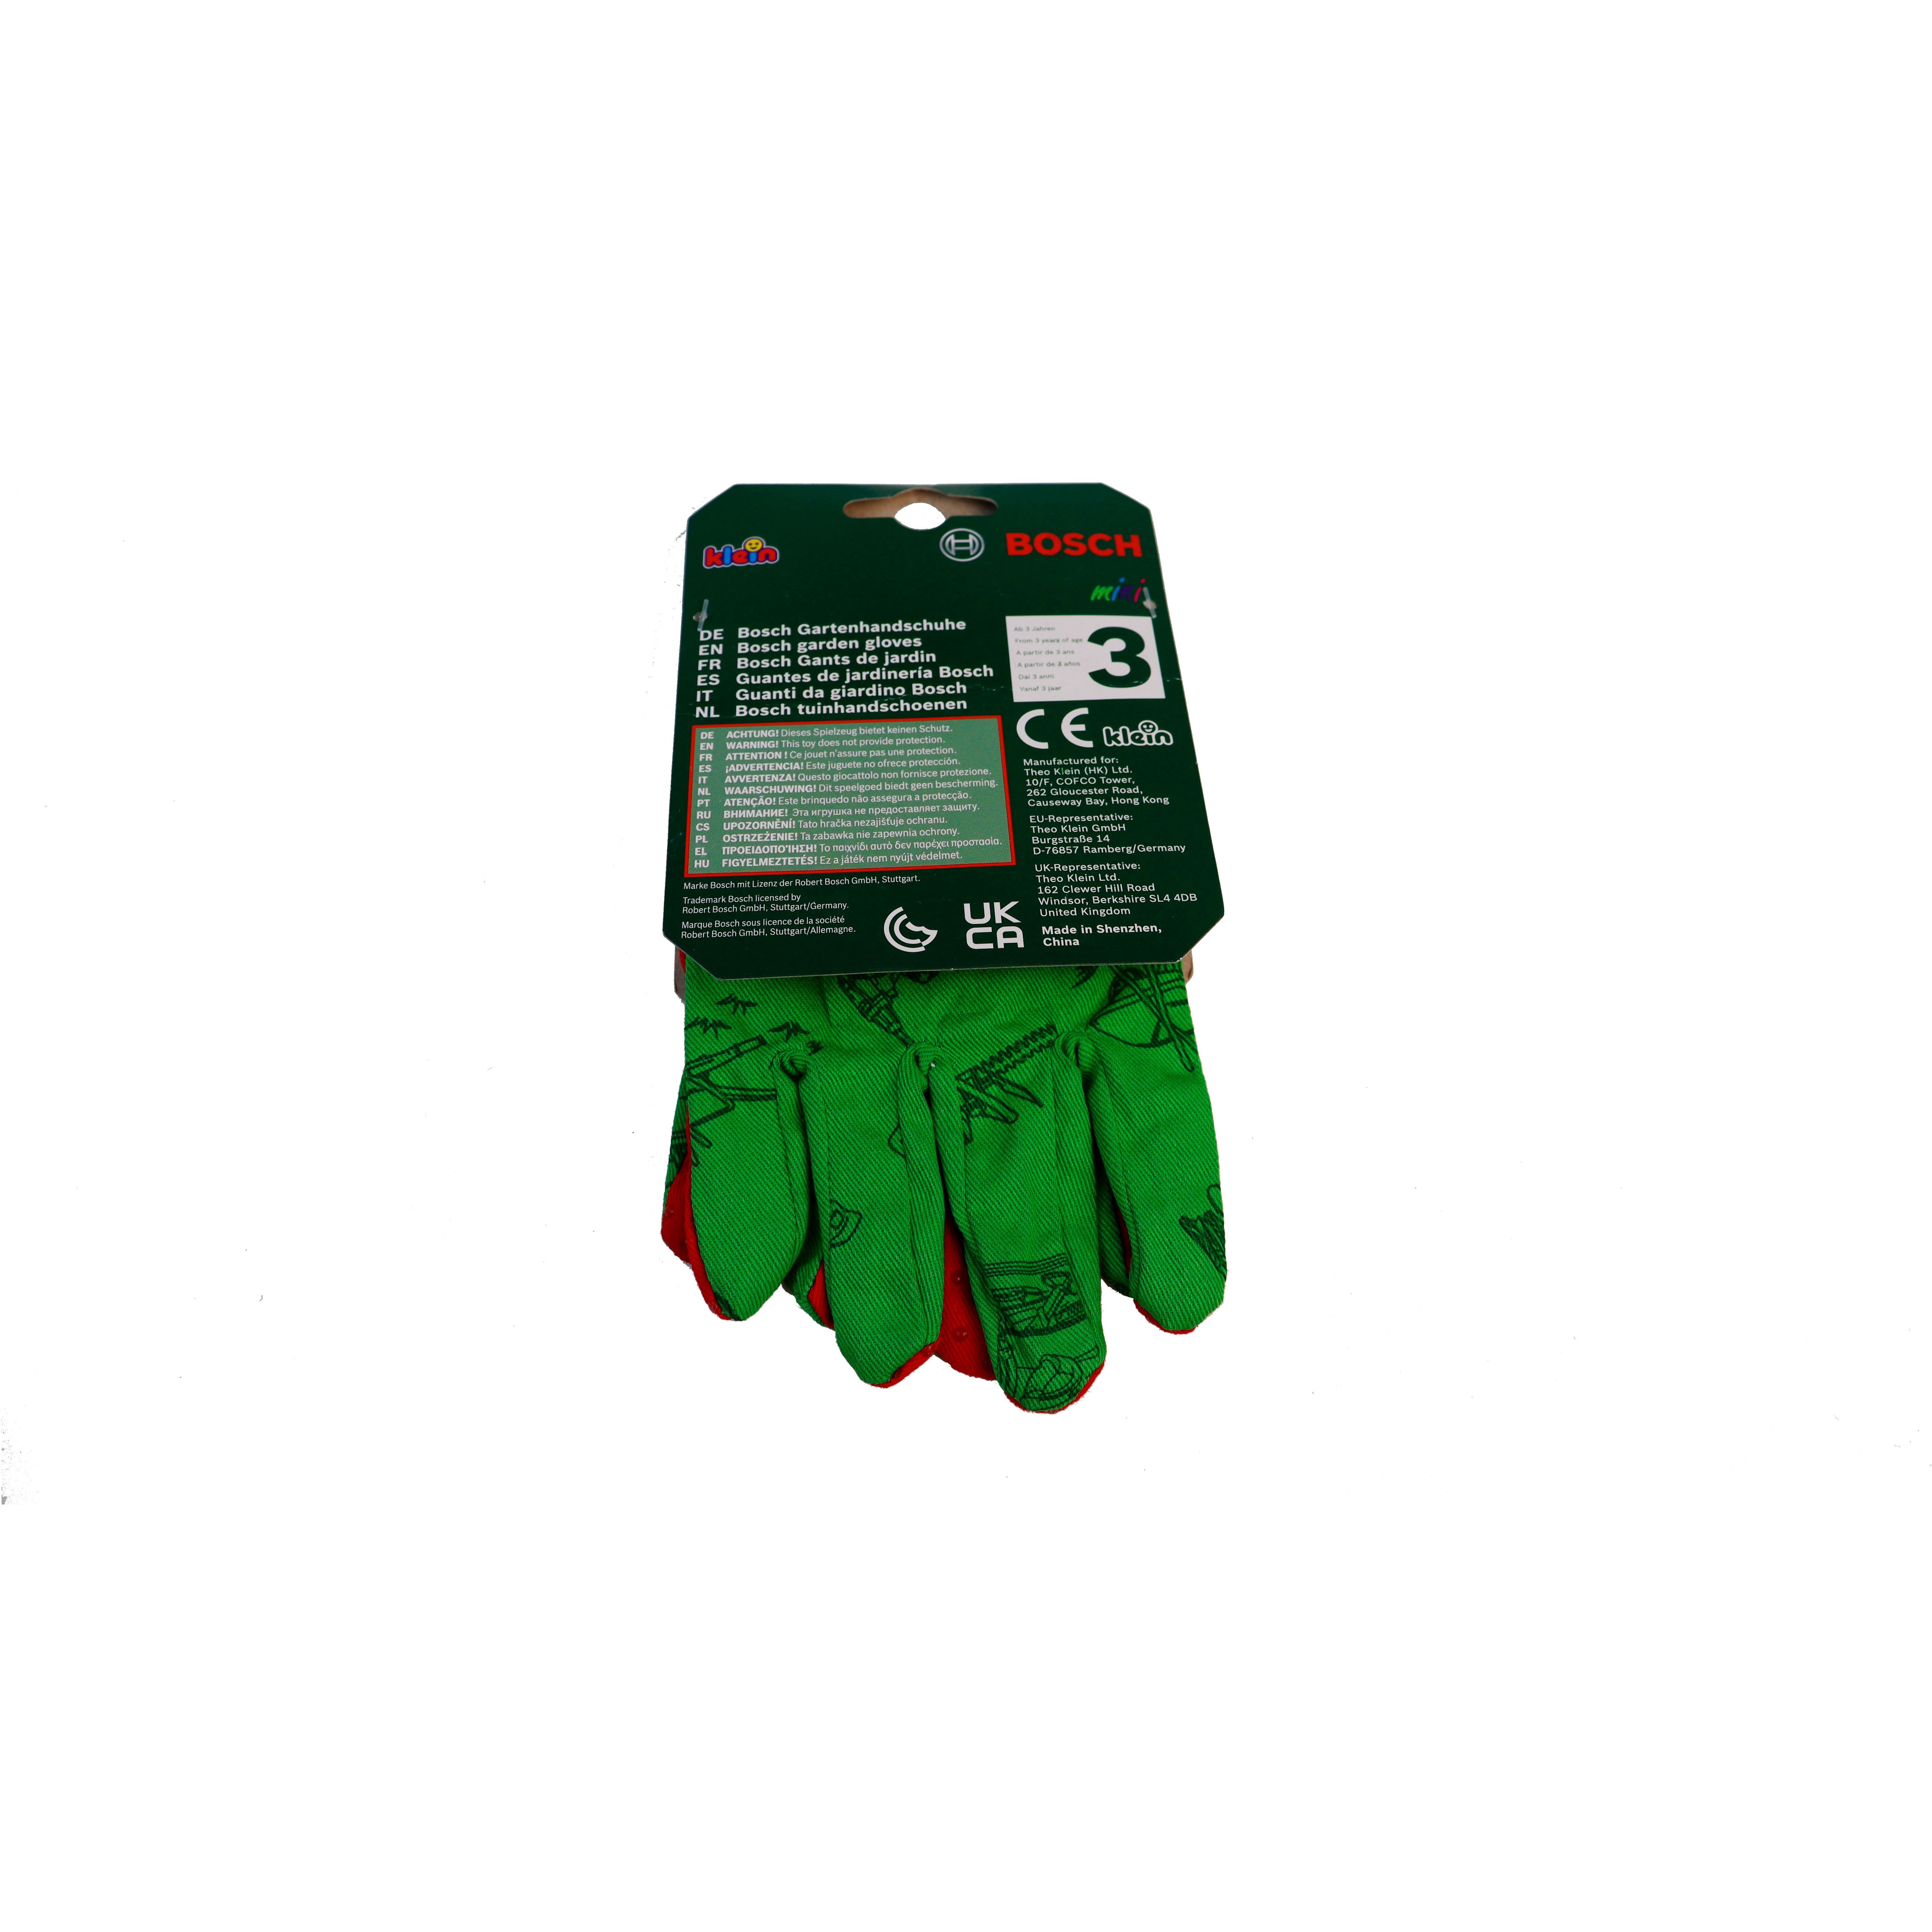 Игрушечный садовый набор Bosch Mini садовые перчатки (2798) - фото 5